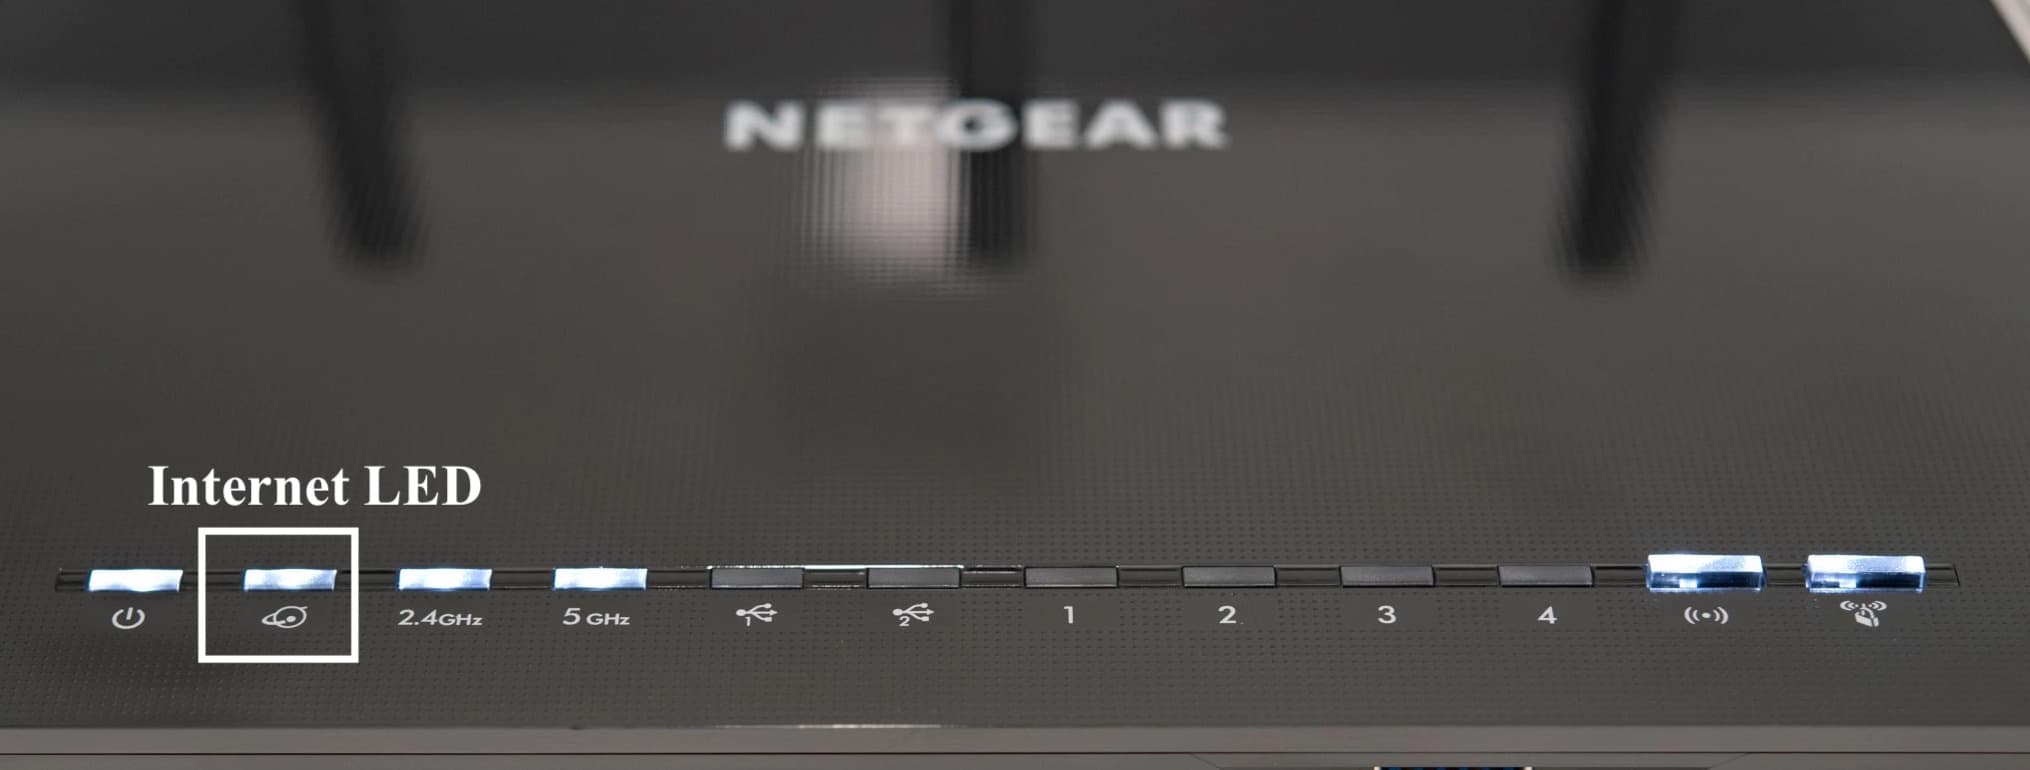 Internet LED on Netgear Router